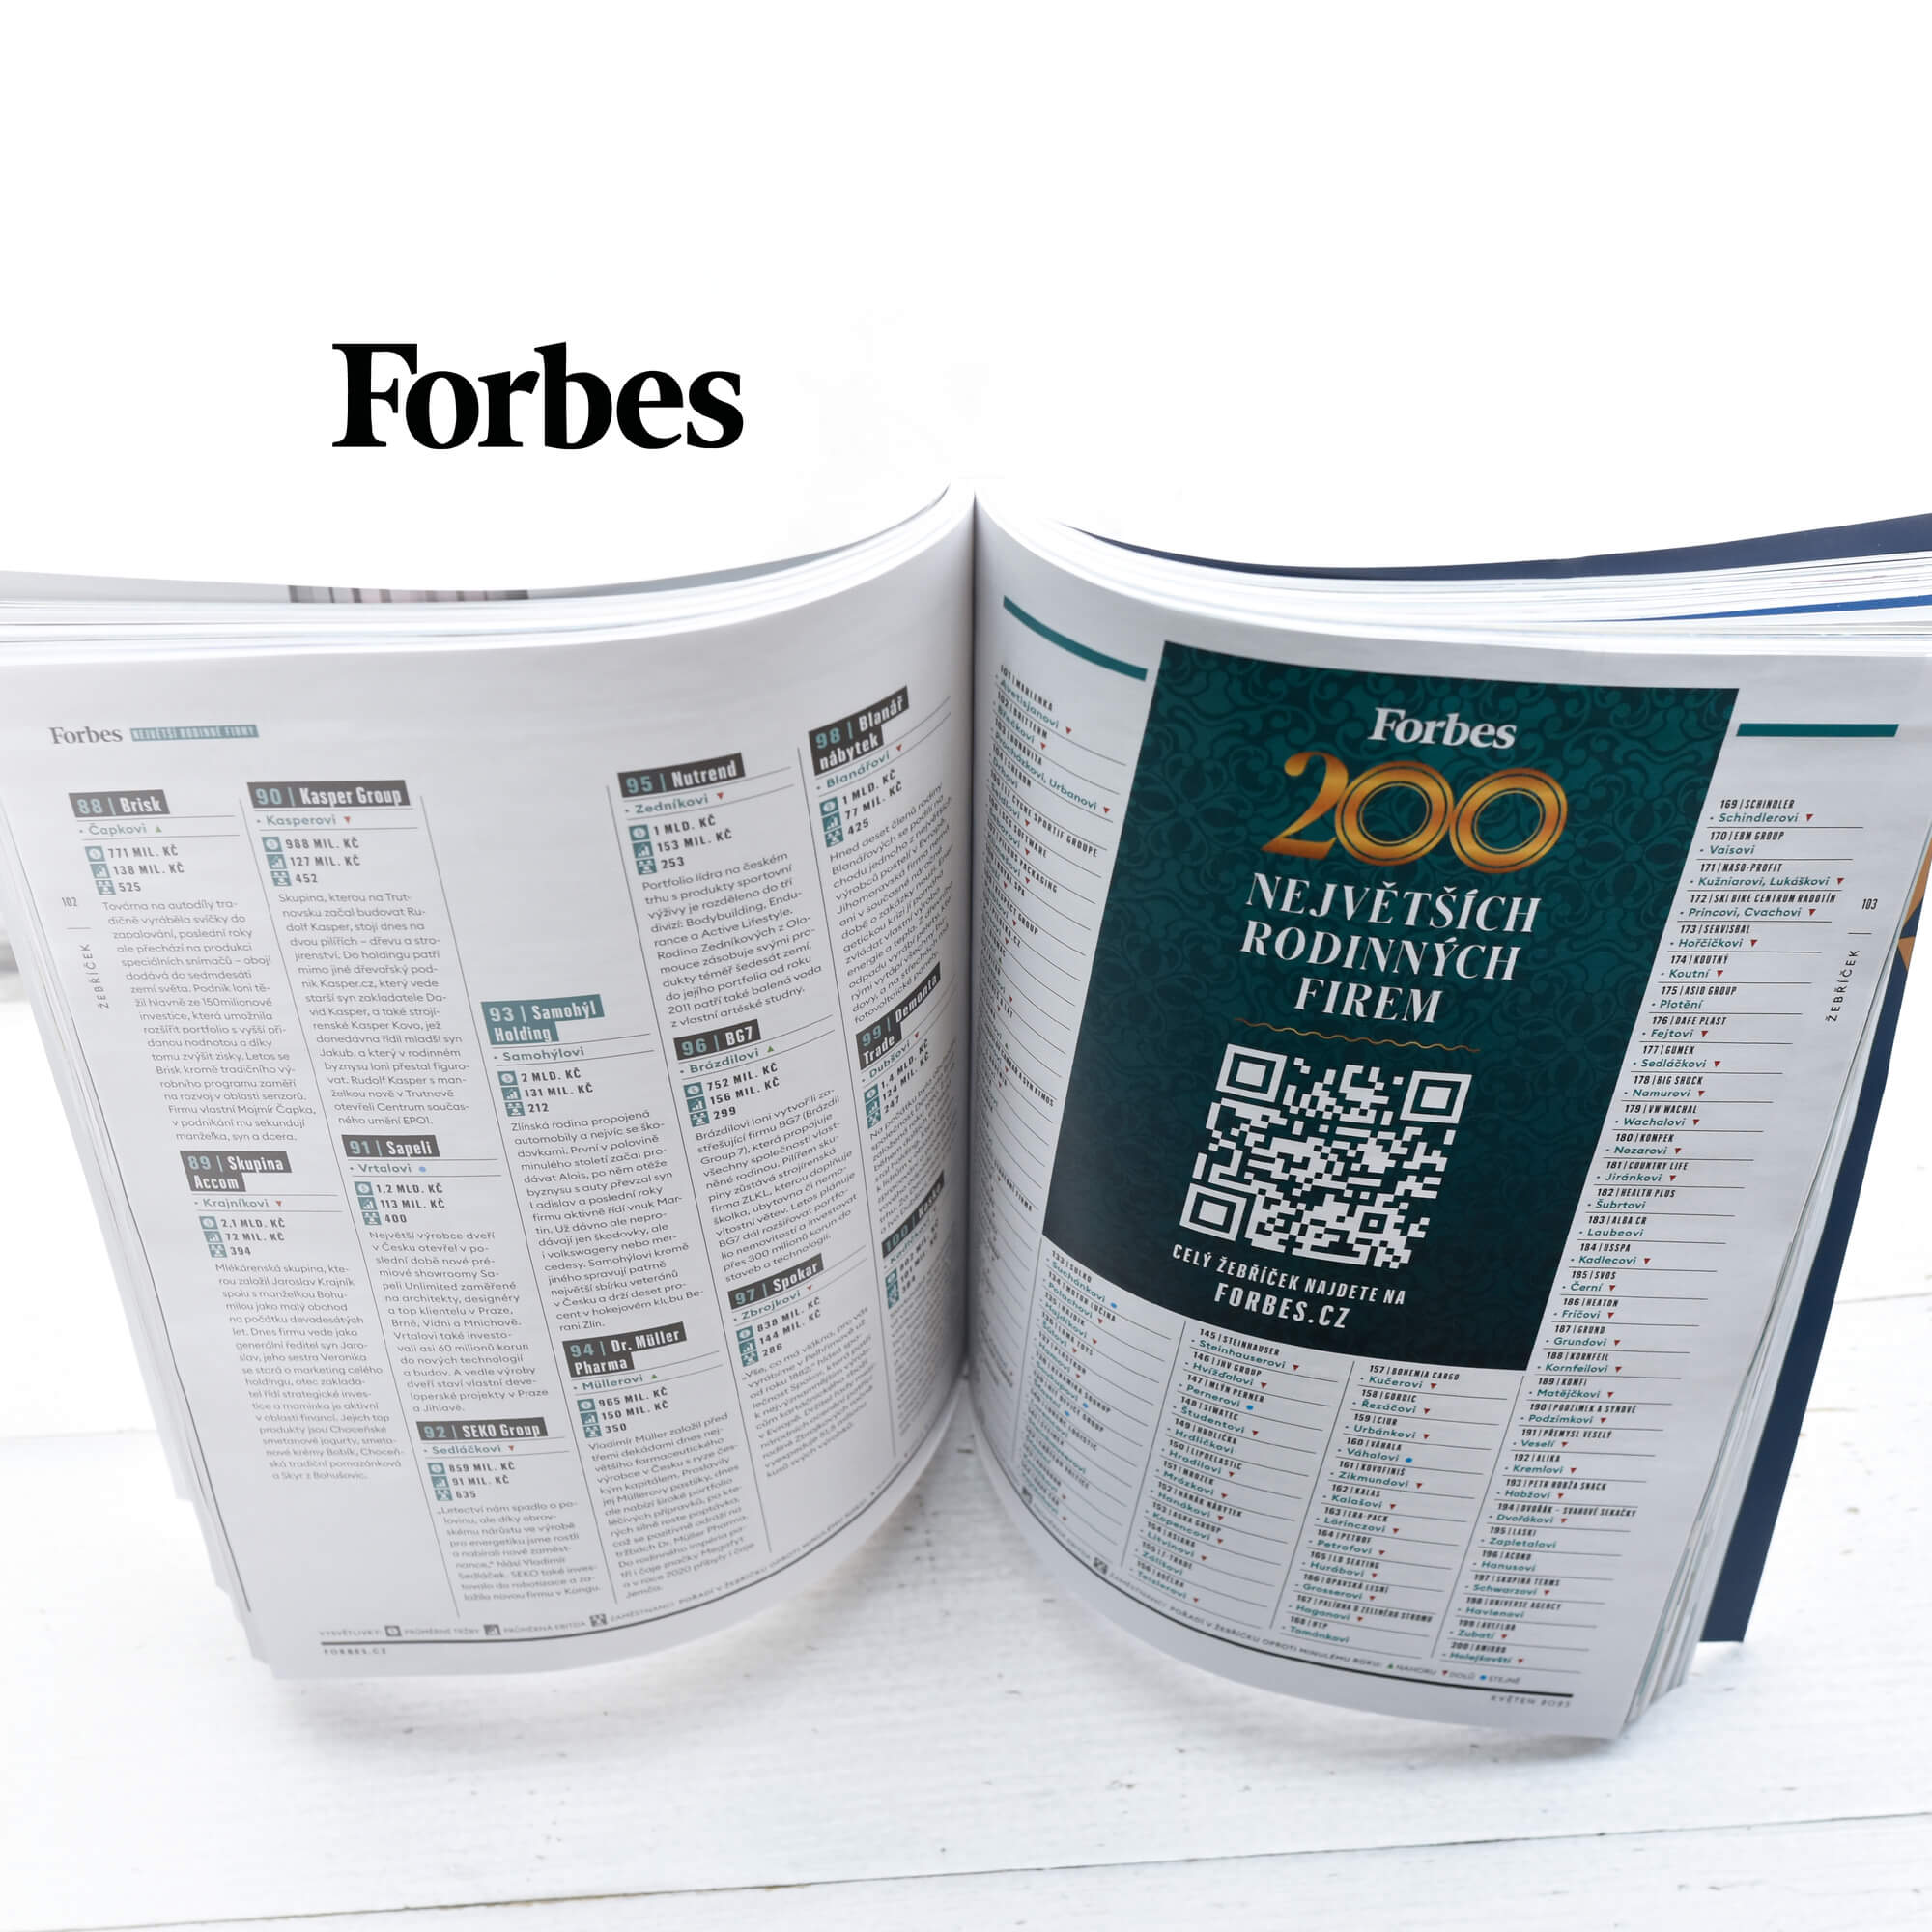 LIKO-S ve Forbes žebříčku 200 největších rodinných firem v ČR